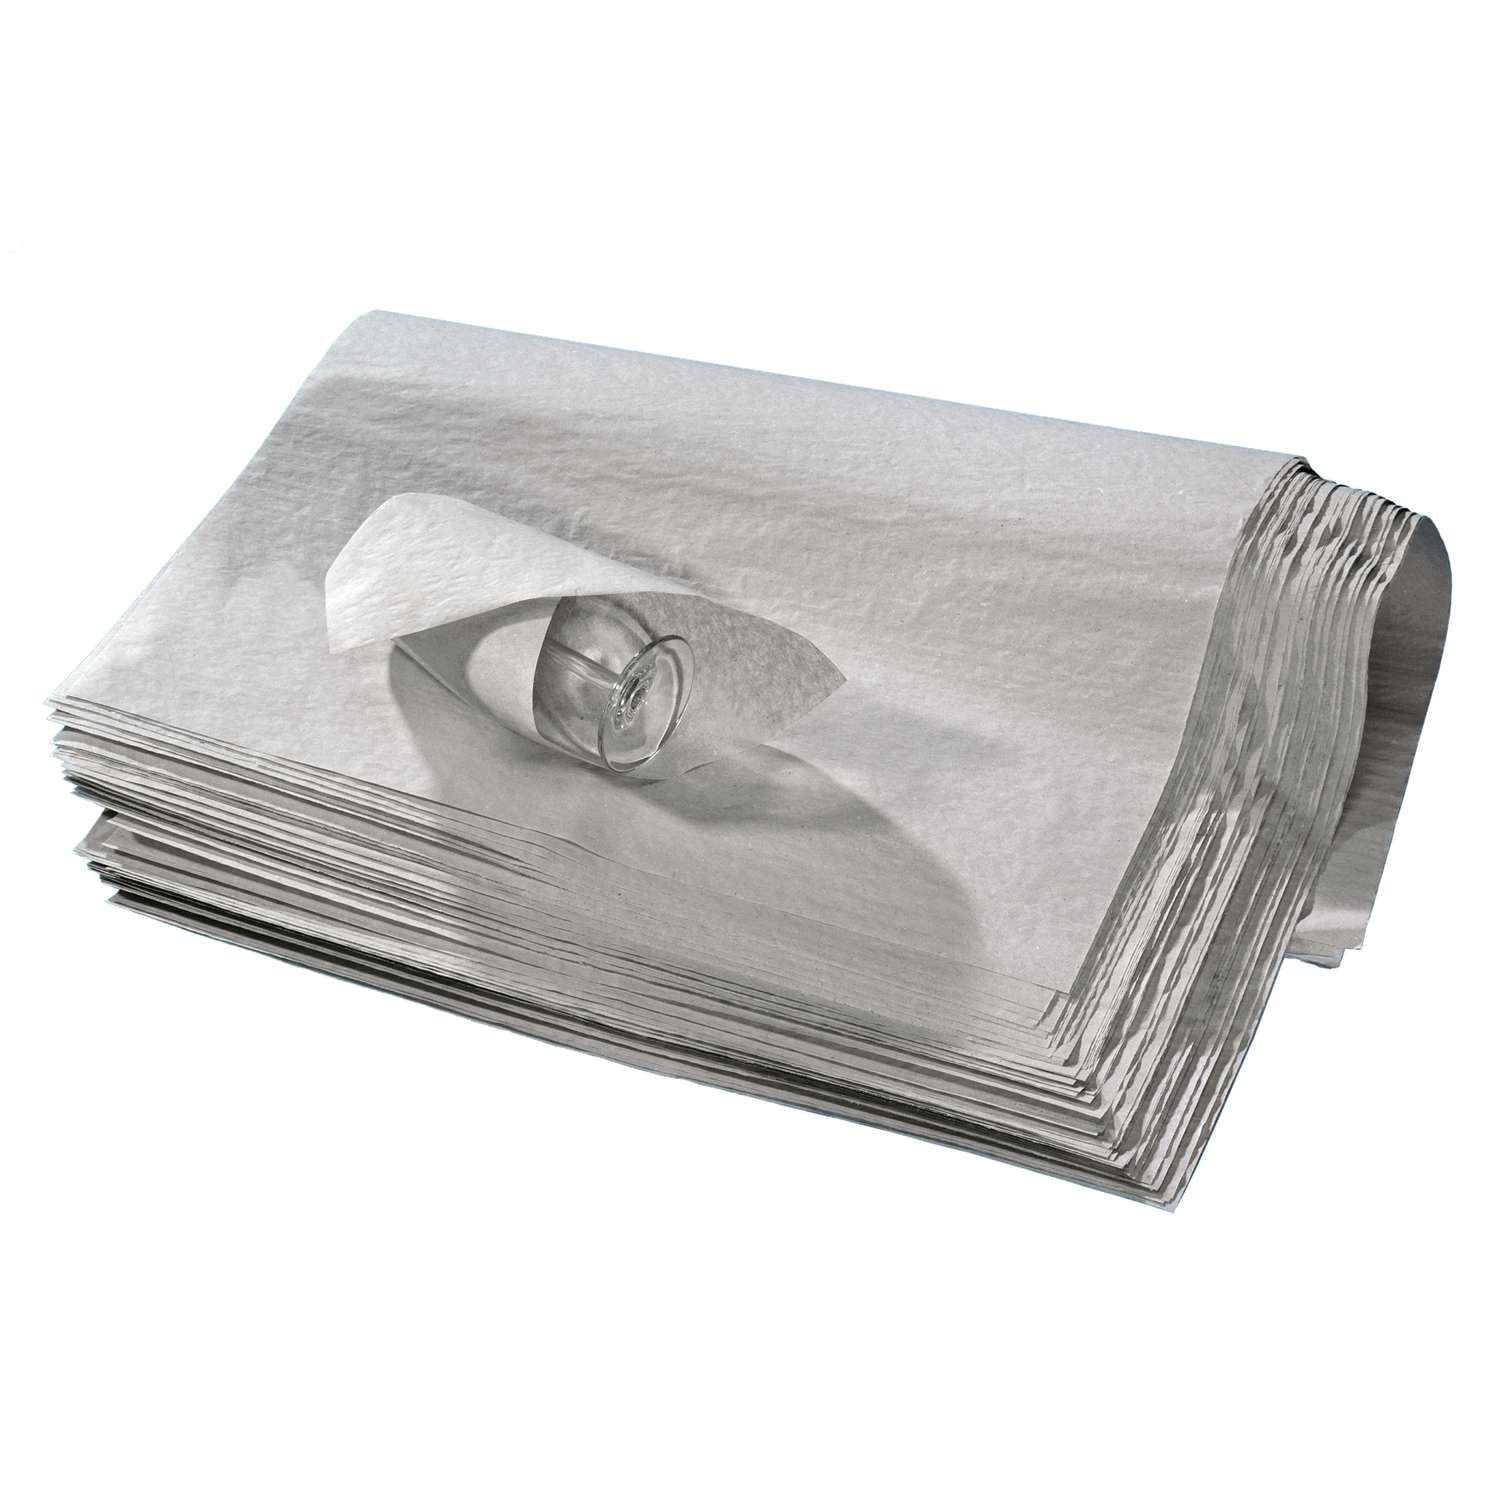 50 x 70 cm Lot de 50 feuilles de papier de soie en forme détoile pour emballage cadeau 